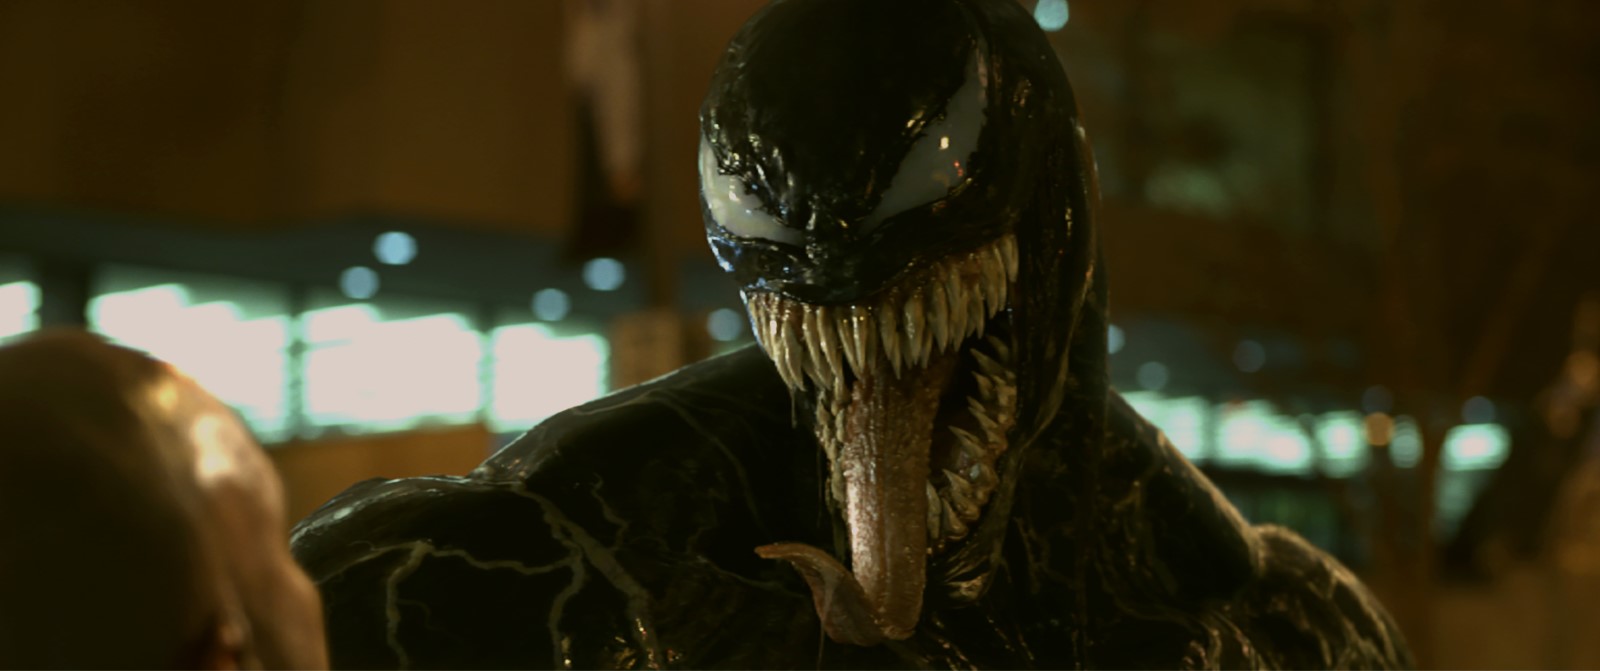 Venom : cette énorme différence physique du personnage par rapport aux comics